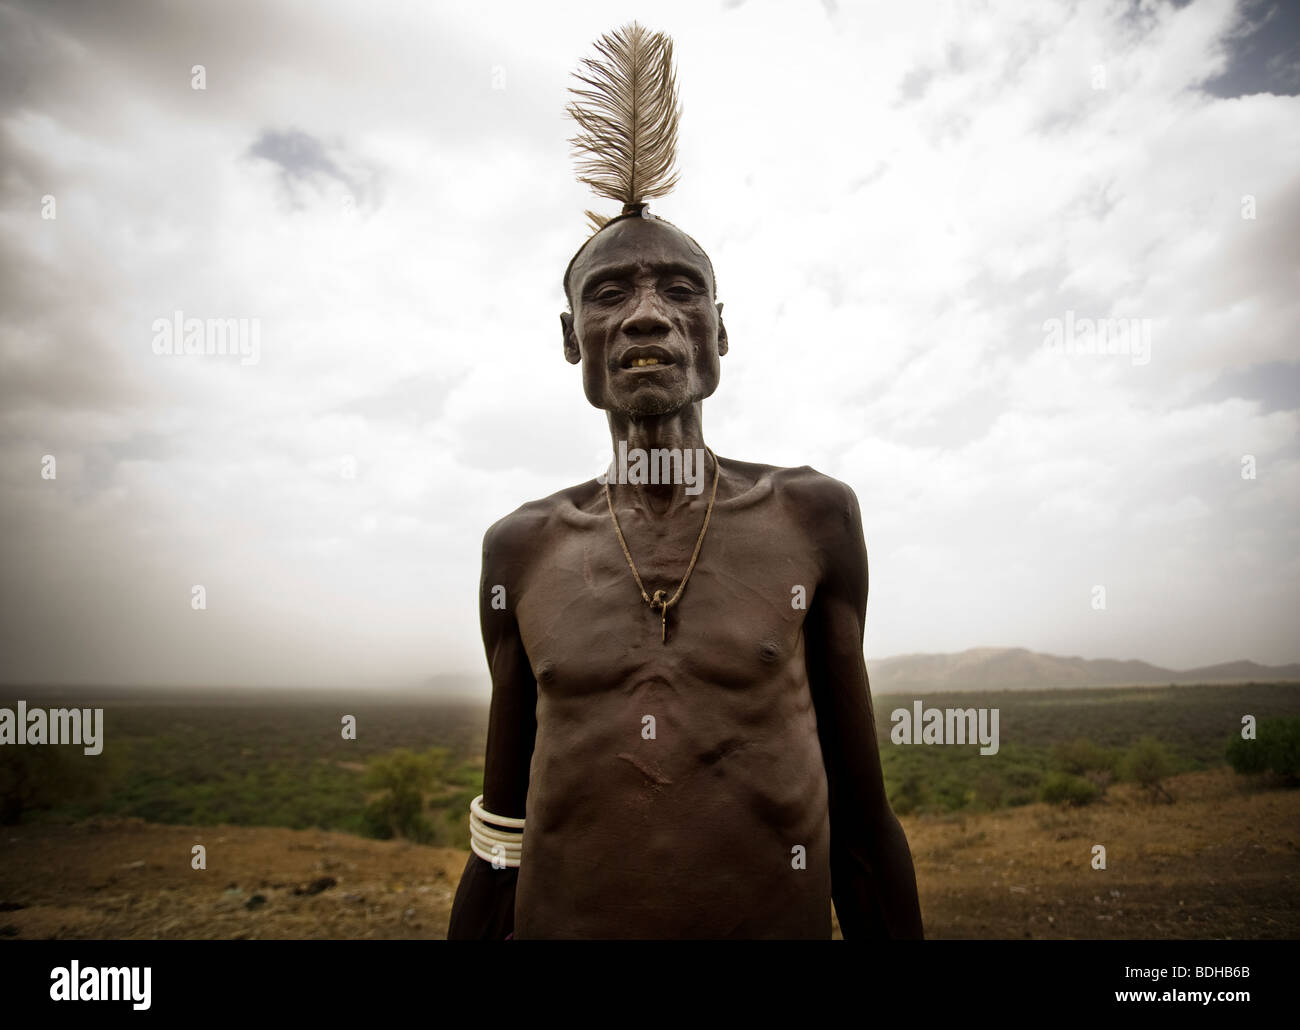 Ein älterer Mann in traditioneller Kleidung und Körper Dekoration stellt vor der krassen Wüstenlandschaft und bewölktem Himmel. Stockfoto